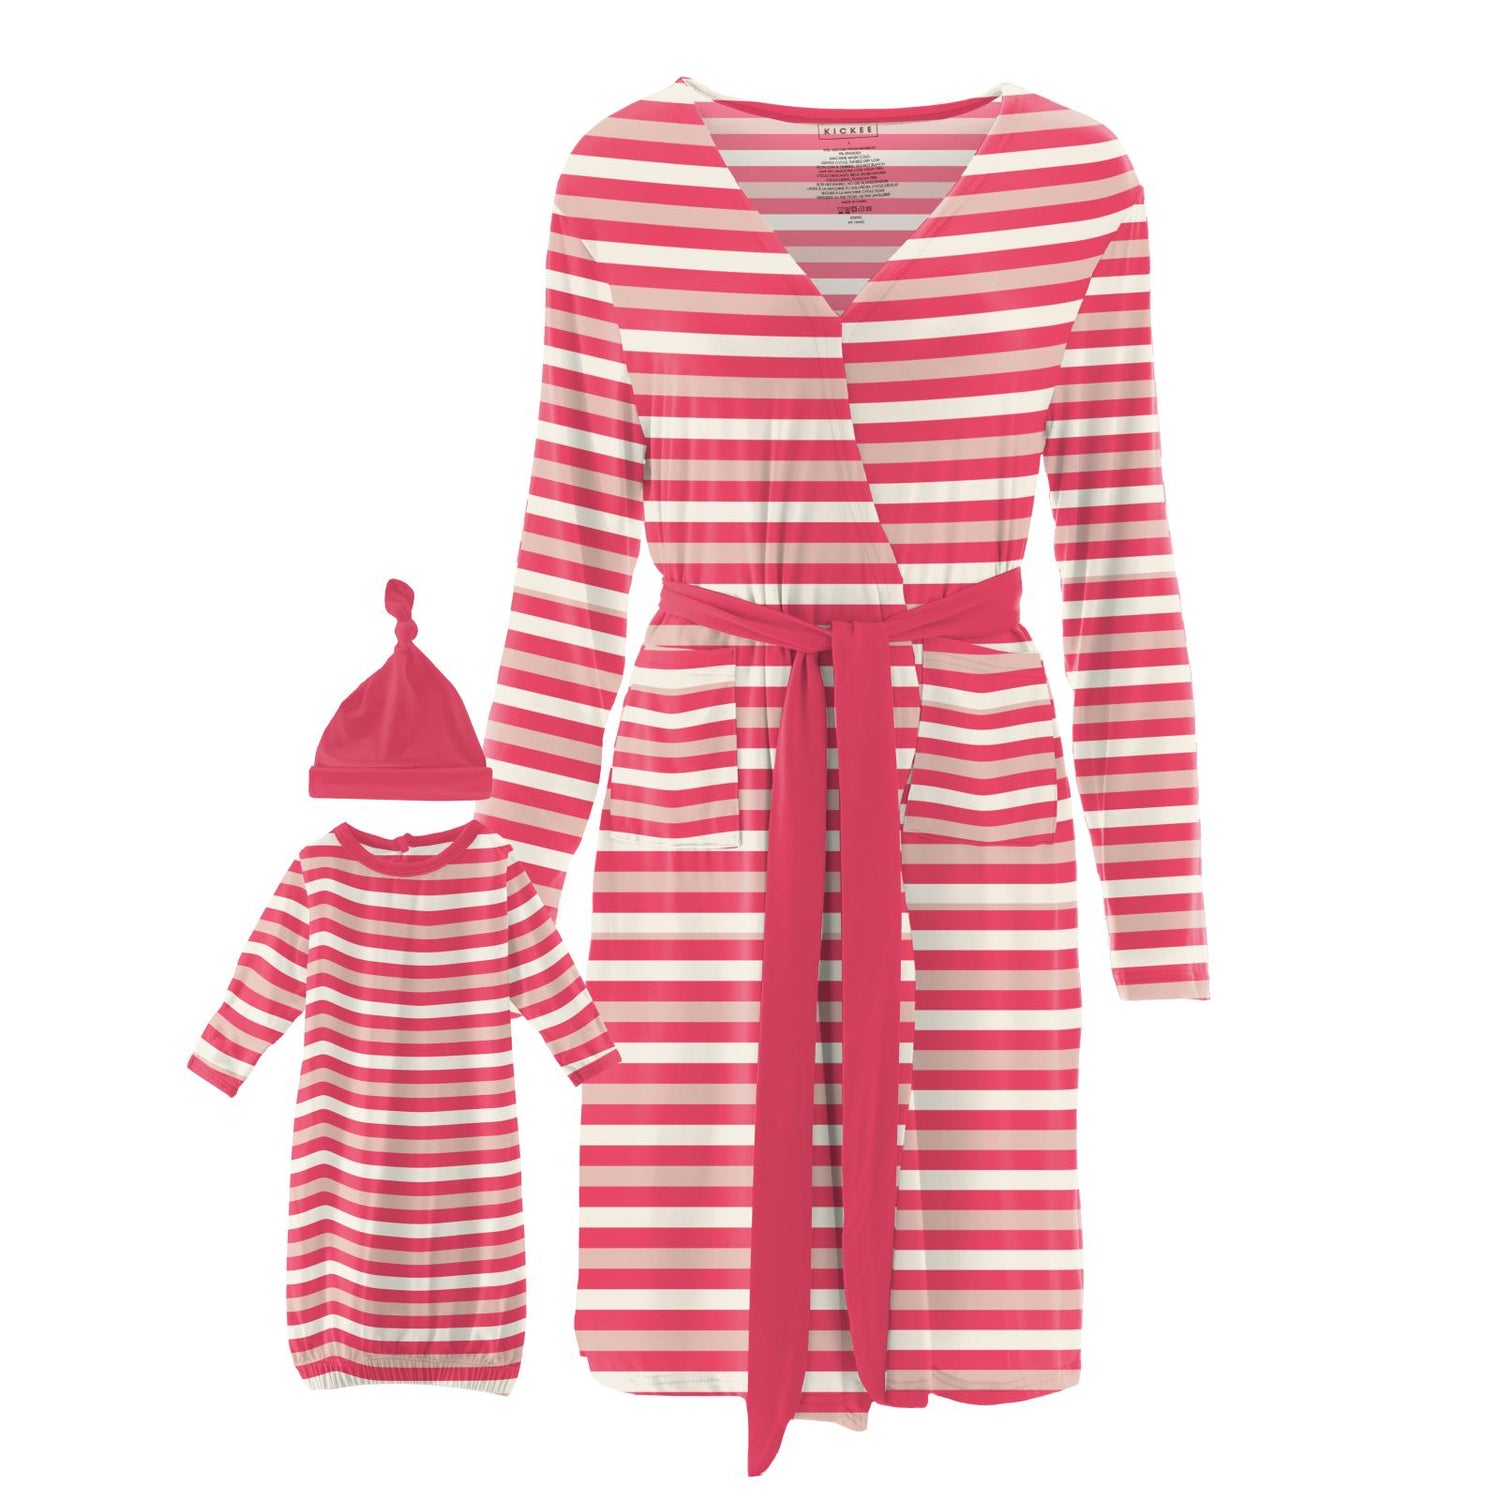 Women's Maternity/Nursing Robe & Layette Gown Set in Hopscotch Stripe